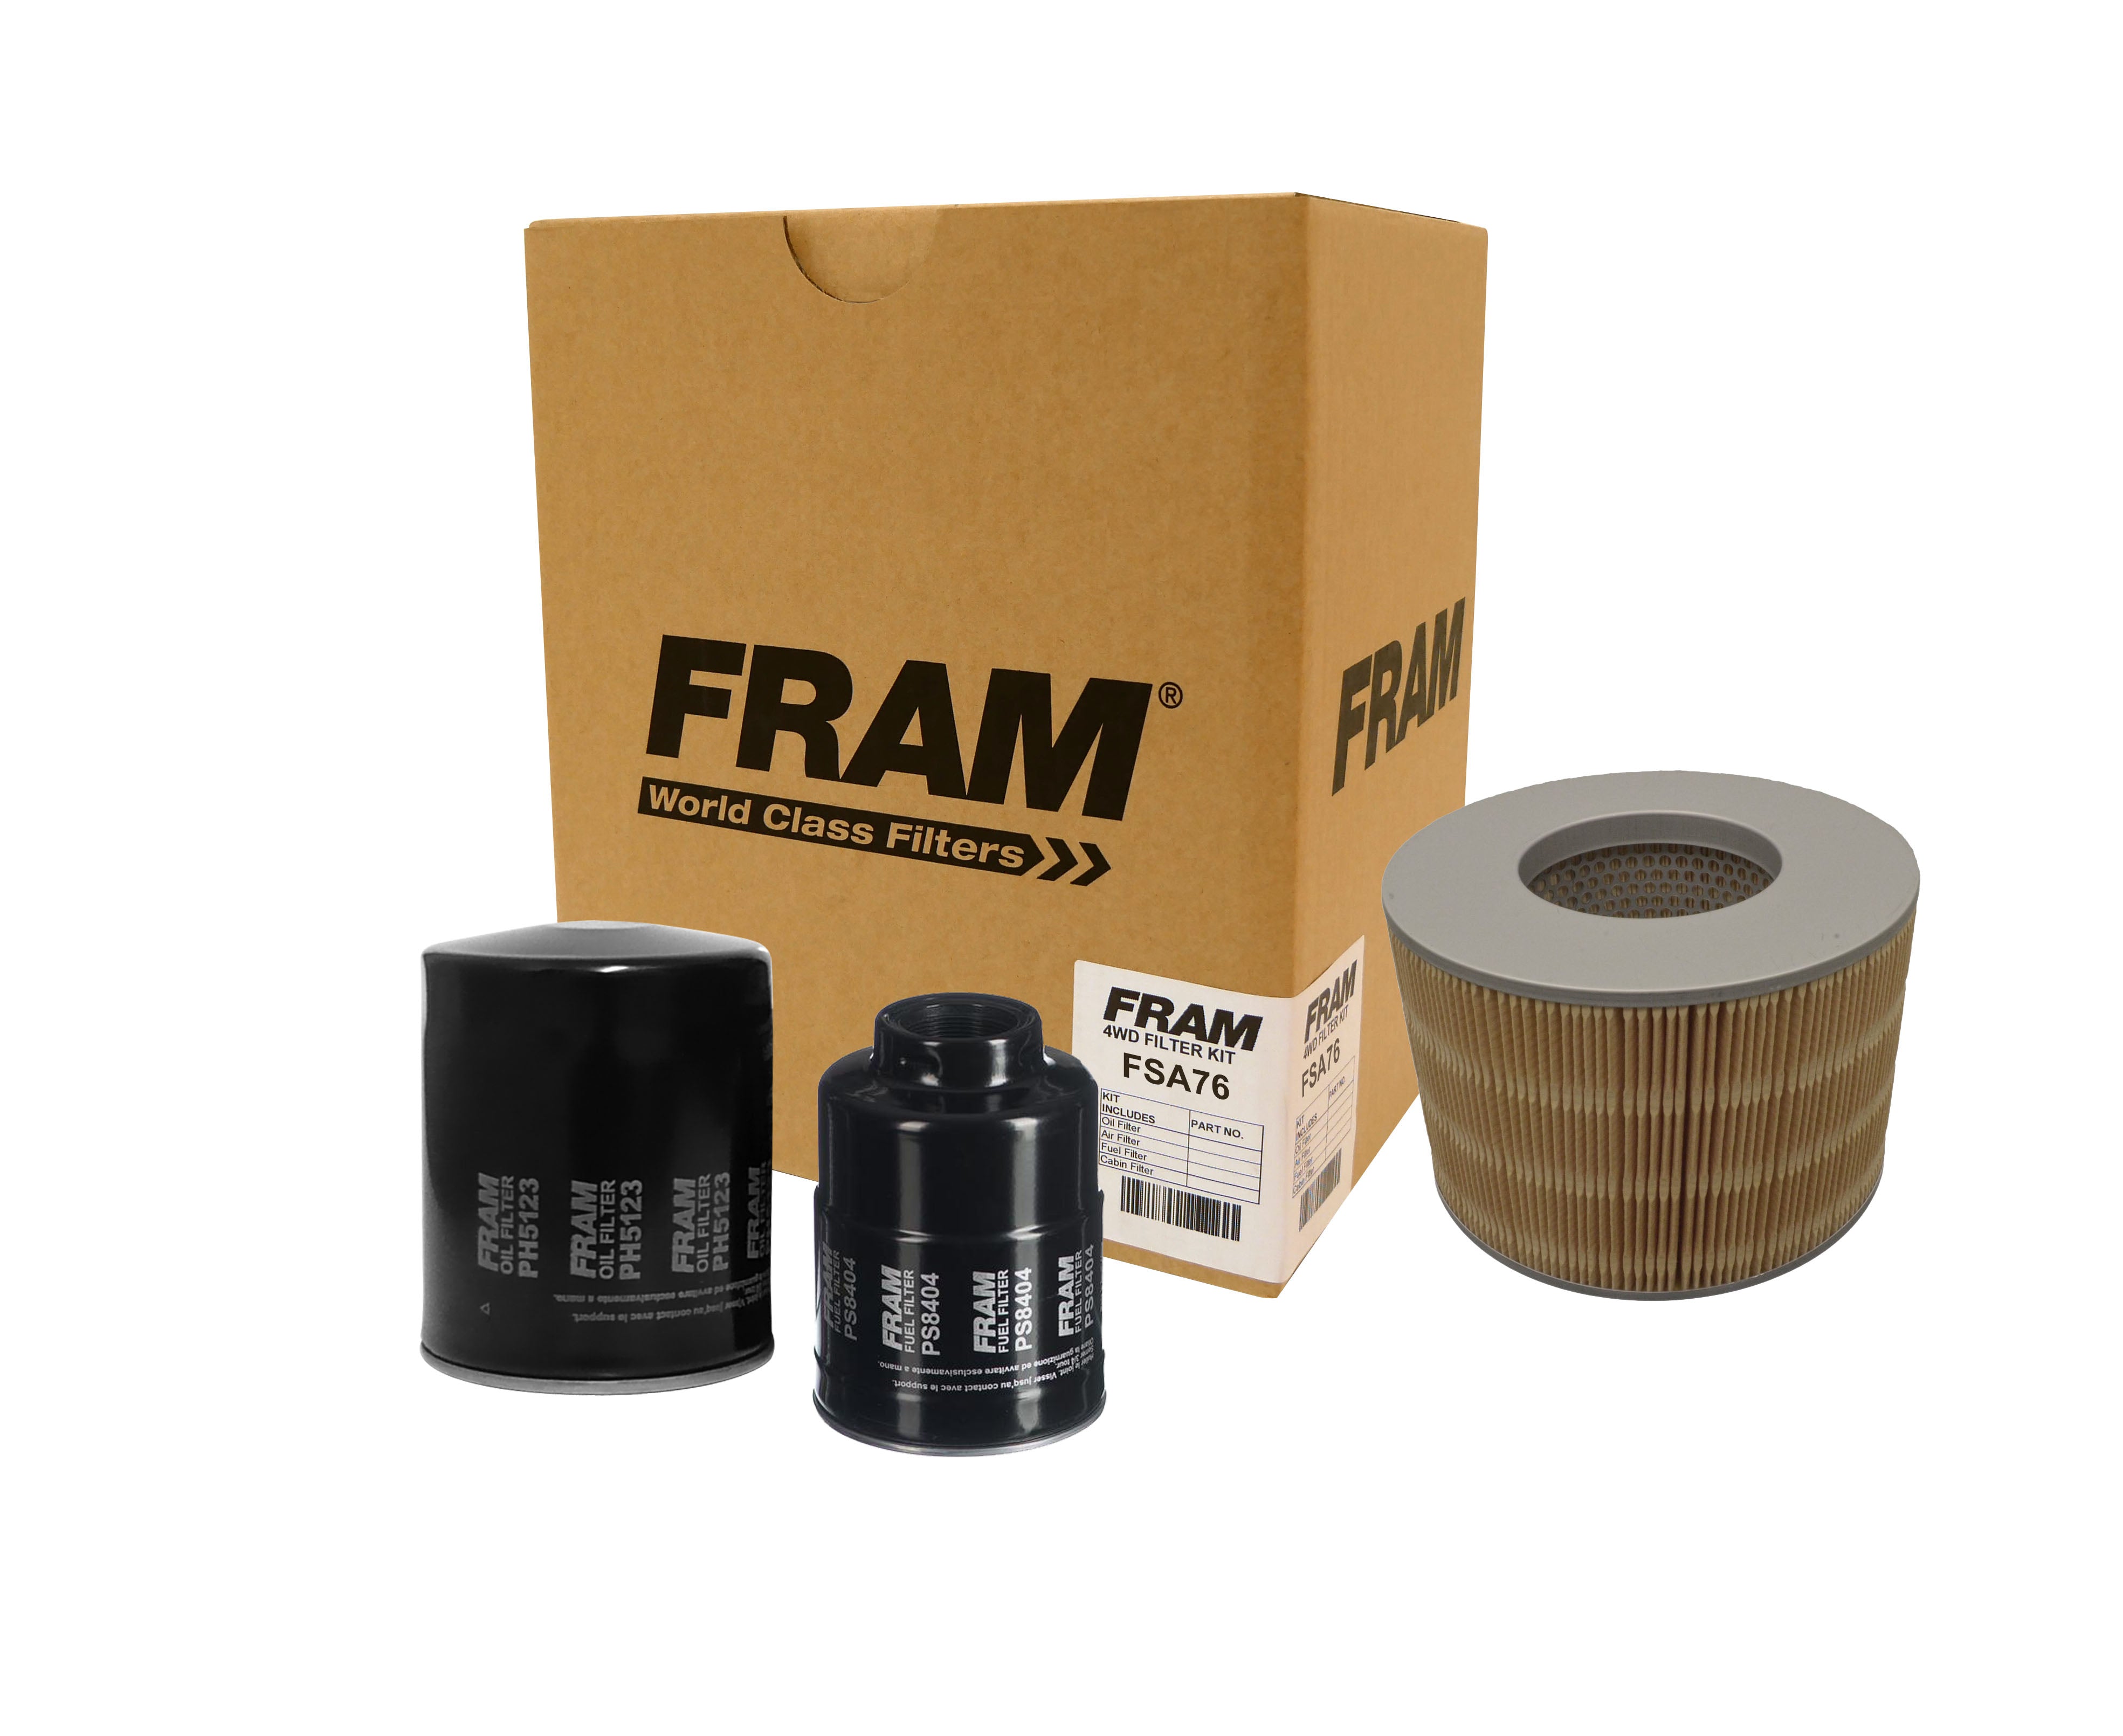 FRAM 4wd Filter Kit for Toyota Landcruiser HZJ105 | FRAM